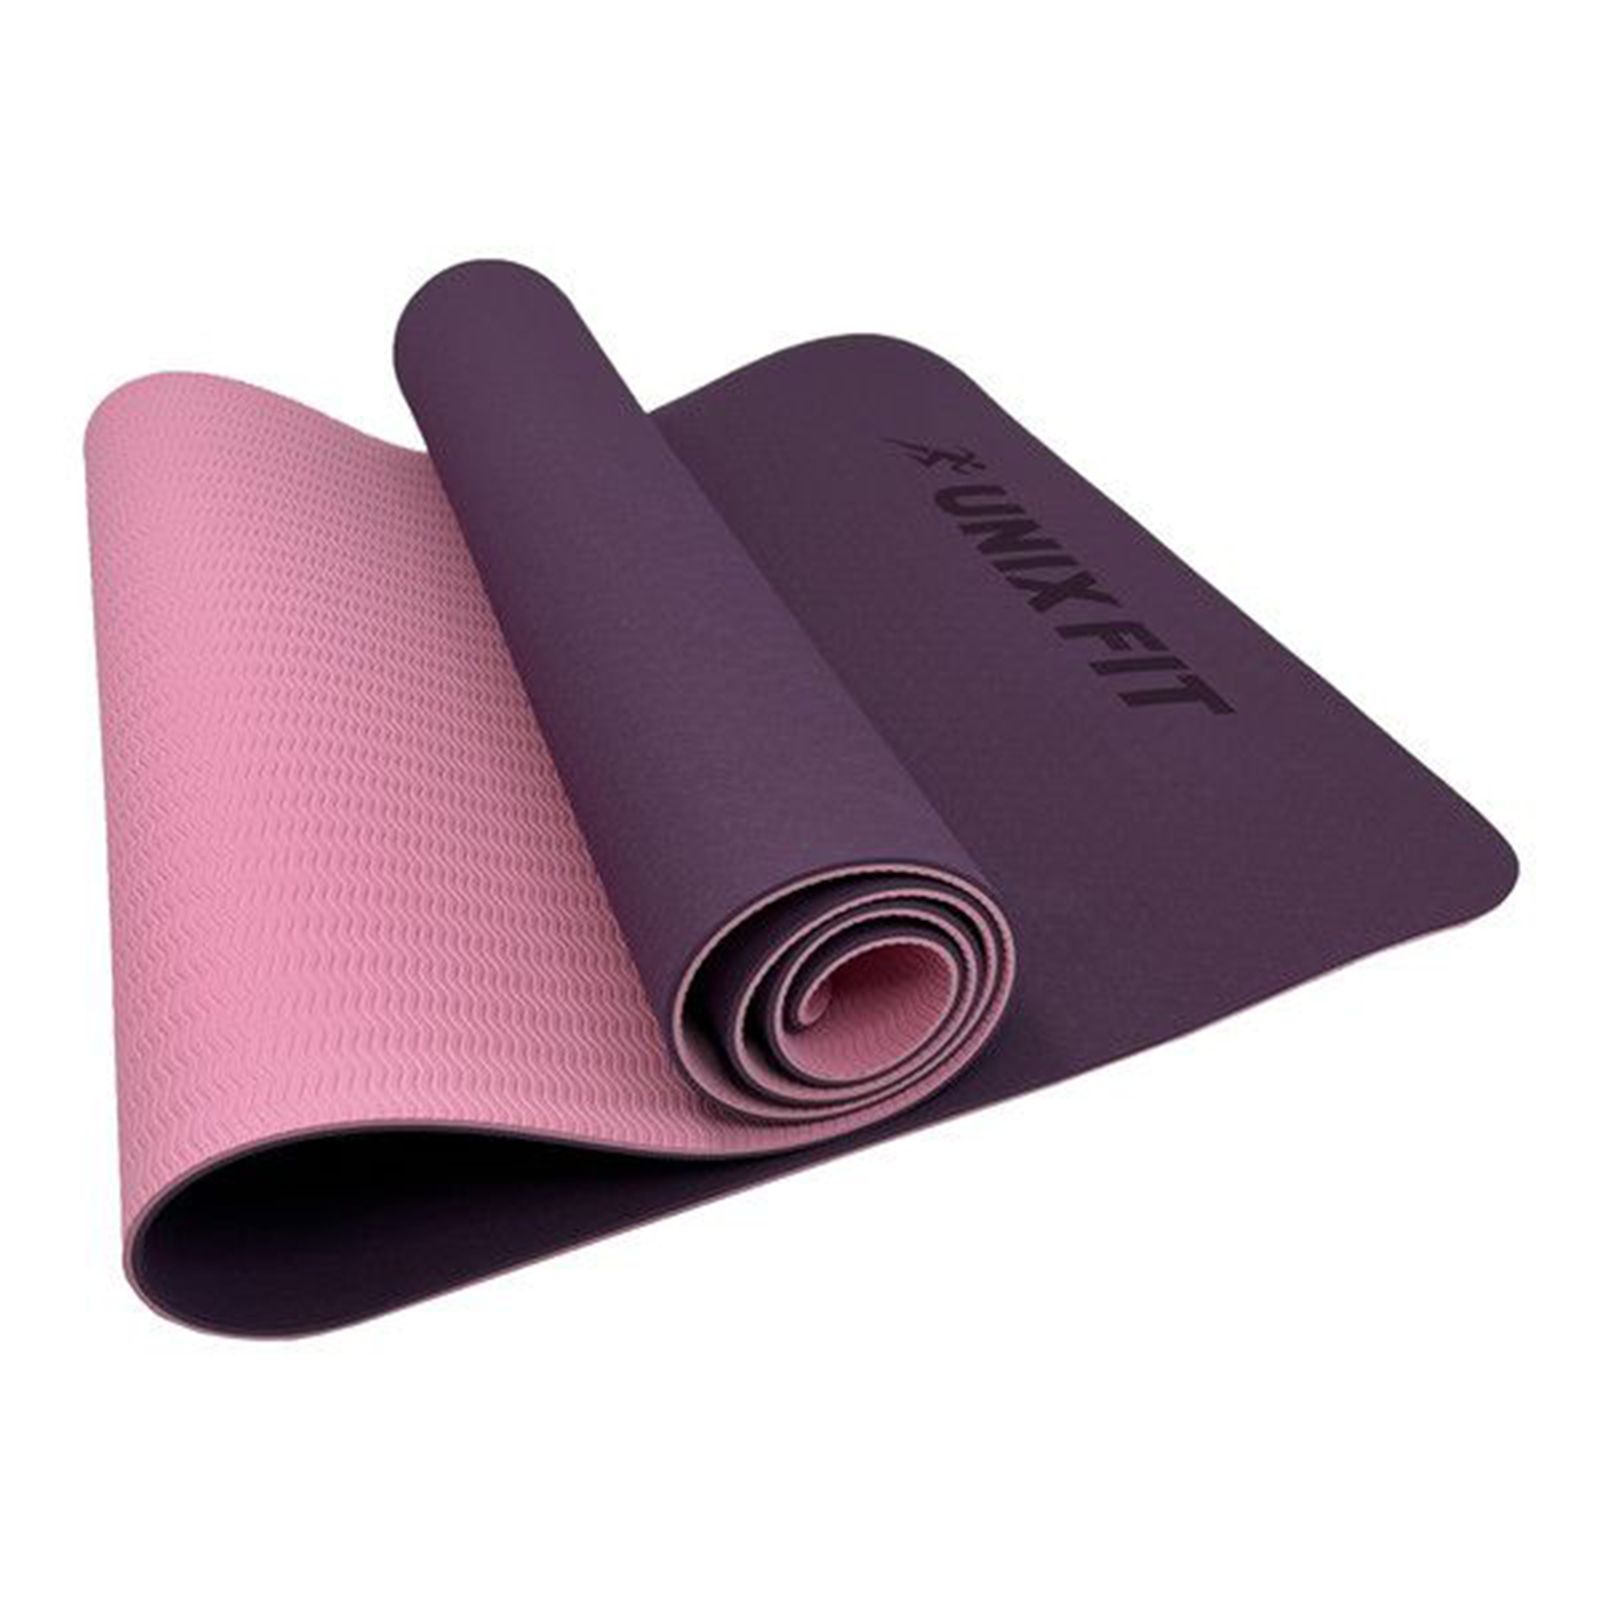 Коврик для йоги и фитнеса UNIX Fit двусторонний, 180 х 61 х 0,8 см, двуцветный, фиолетовый